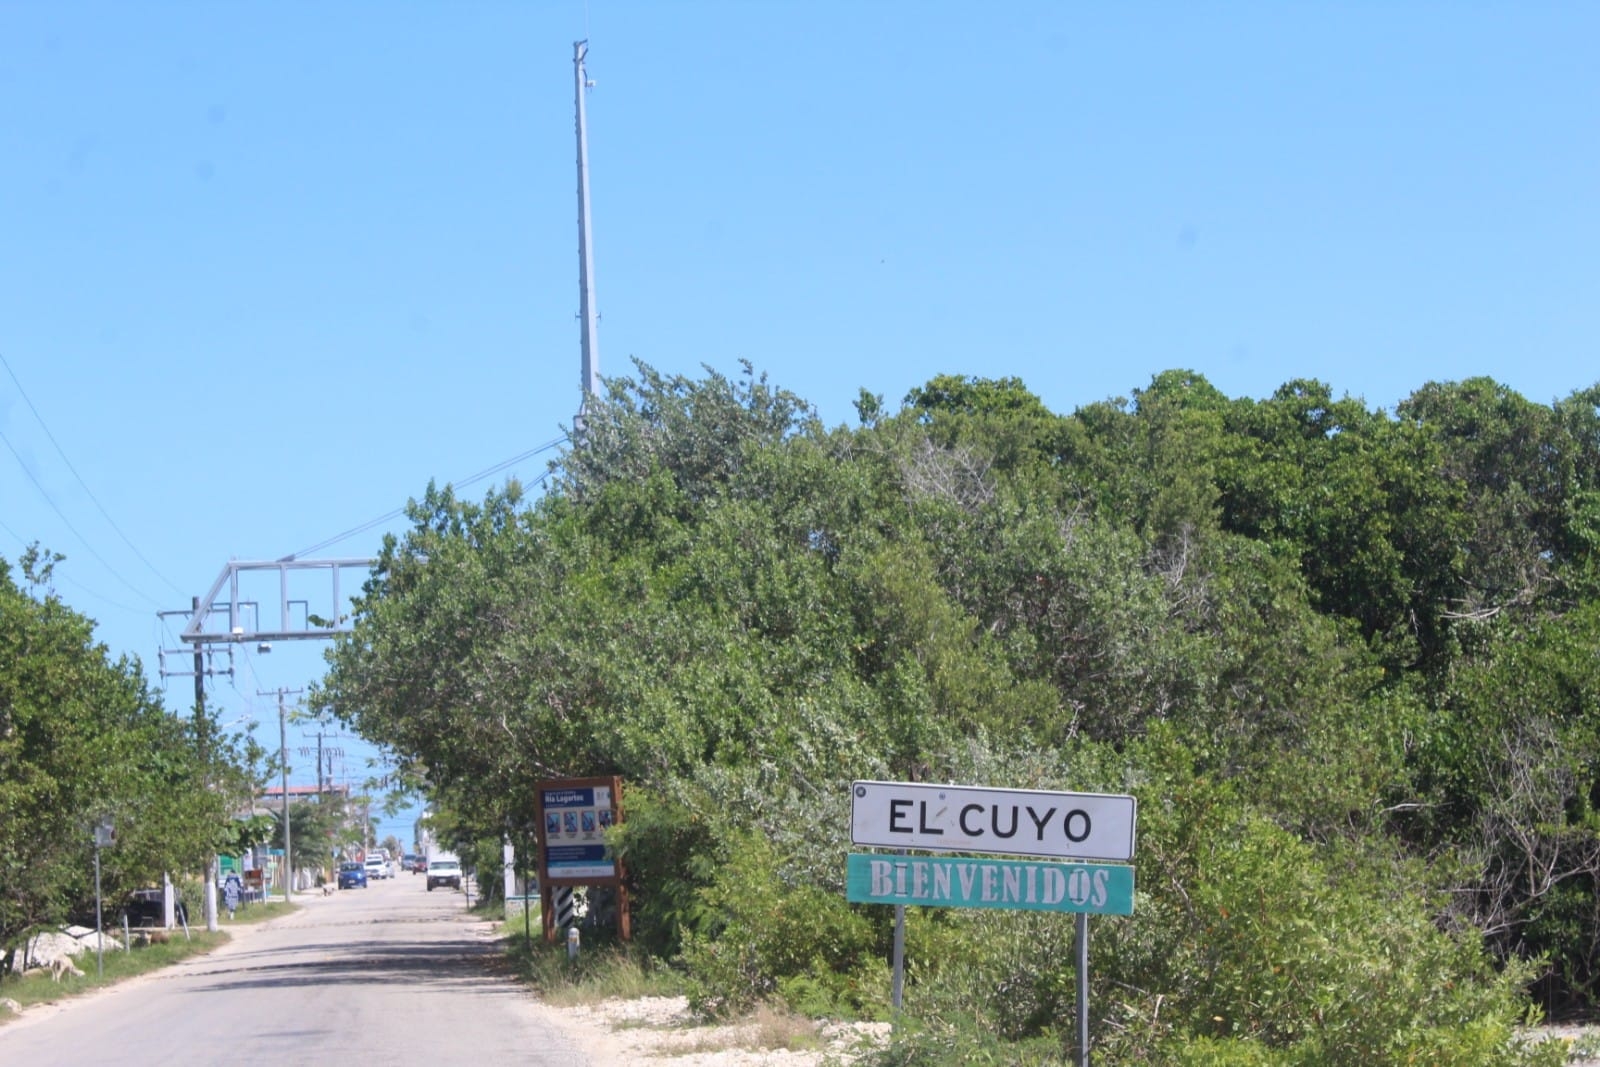 El Cuyo, de puerto maderero a paraíso turístico en Yucatán y hogar de extranjeros